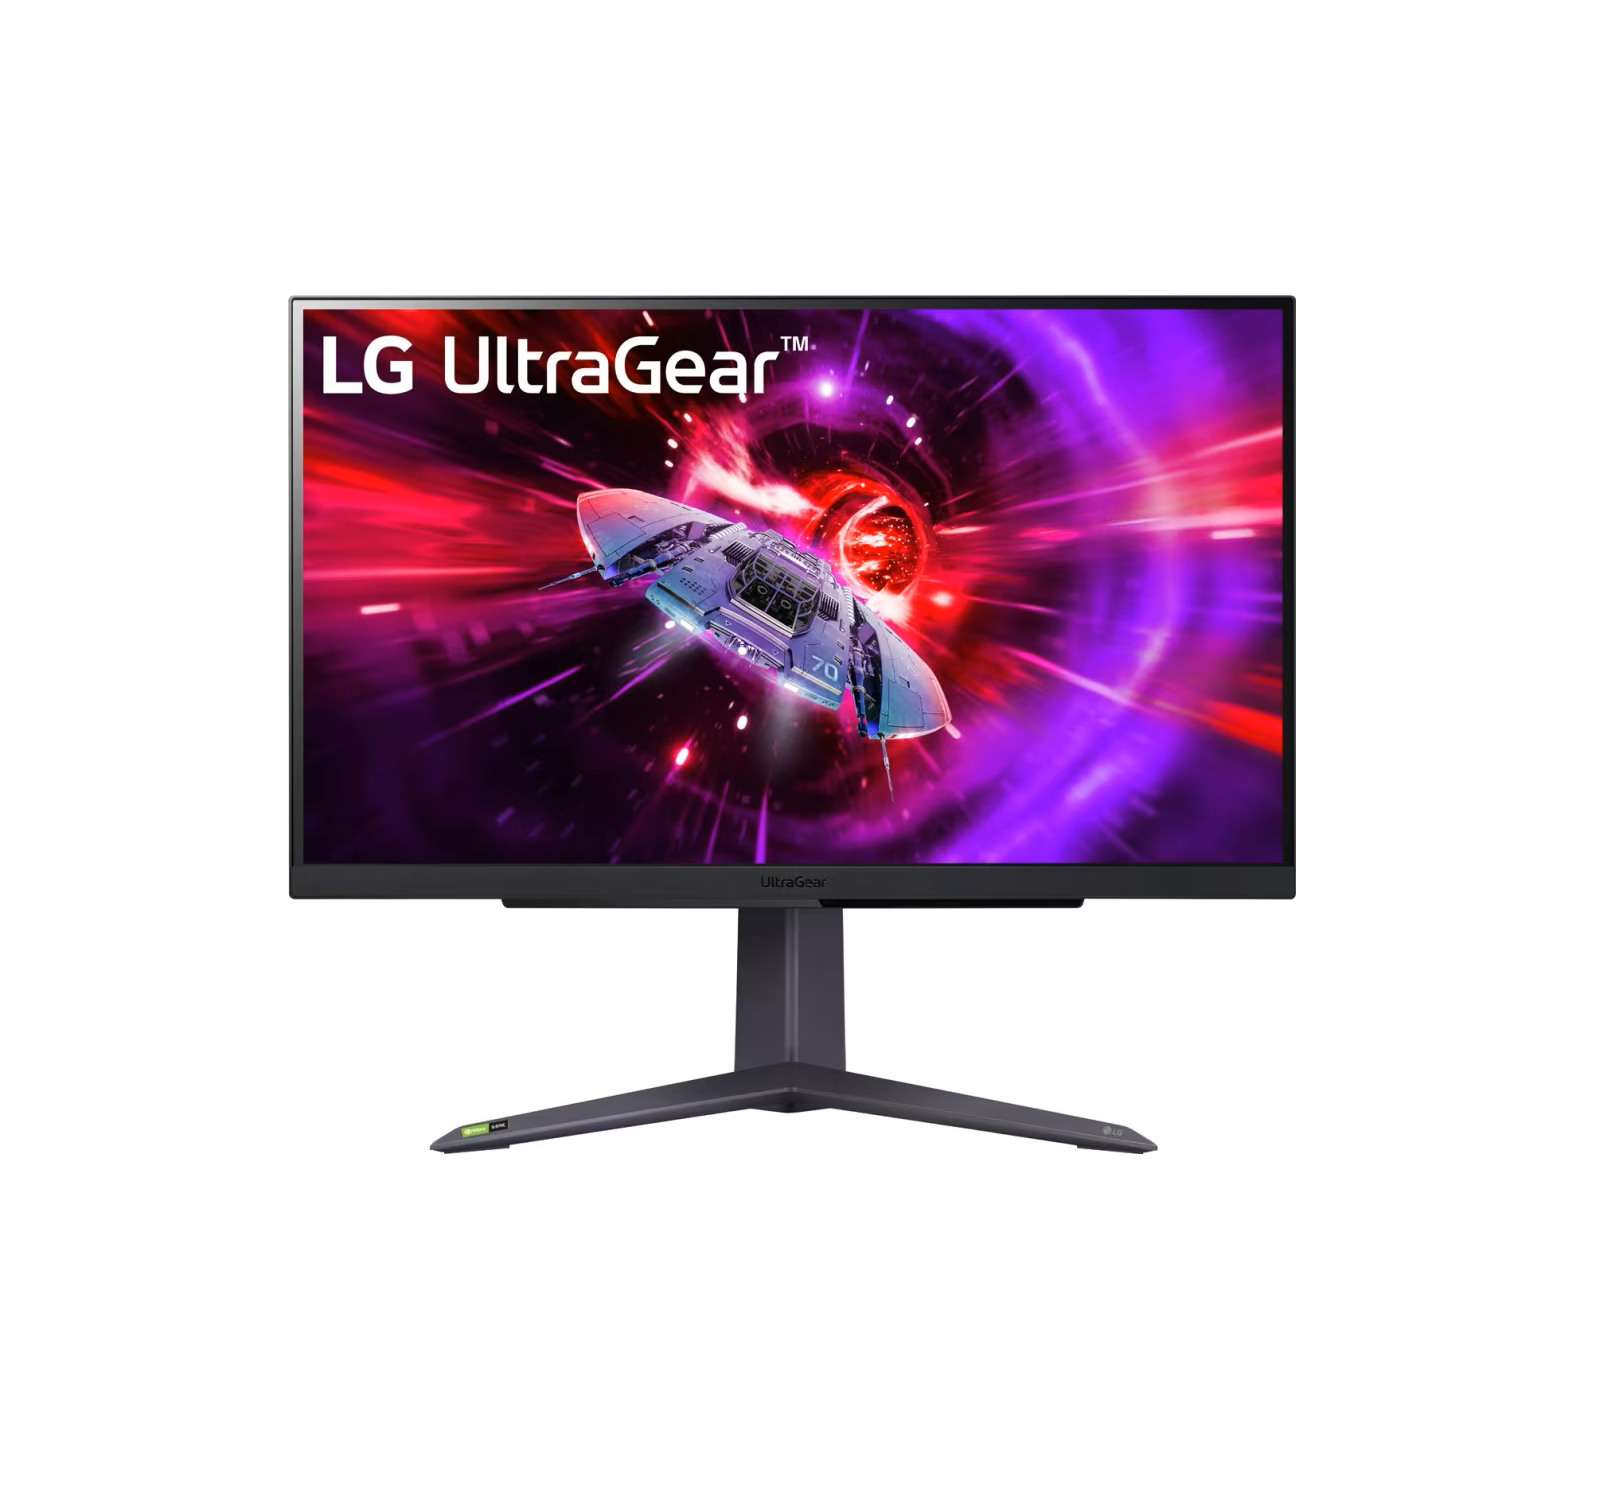 ال جي (27GR75Q-B) شاشة ألعاب LG UltraGear™ QHD بحجم 27 بوصة، وبمعدل تحديث 165 هرتز IPS بسرعة استجابة 1 مللي ثانية (GtG)